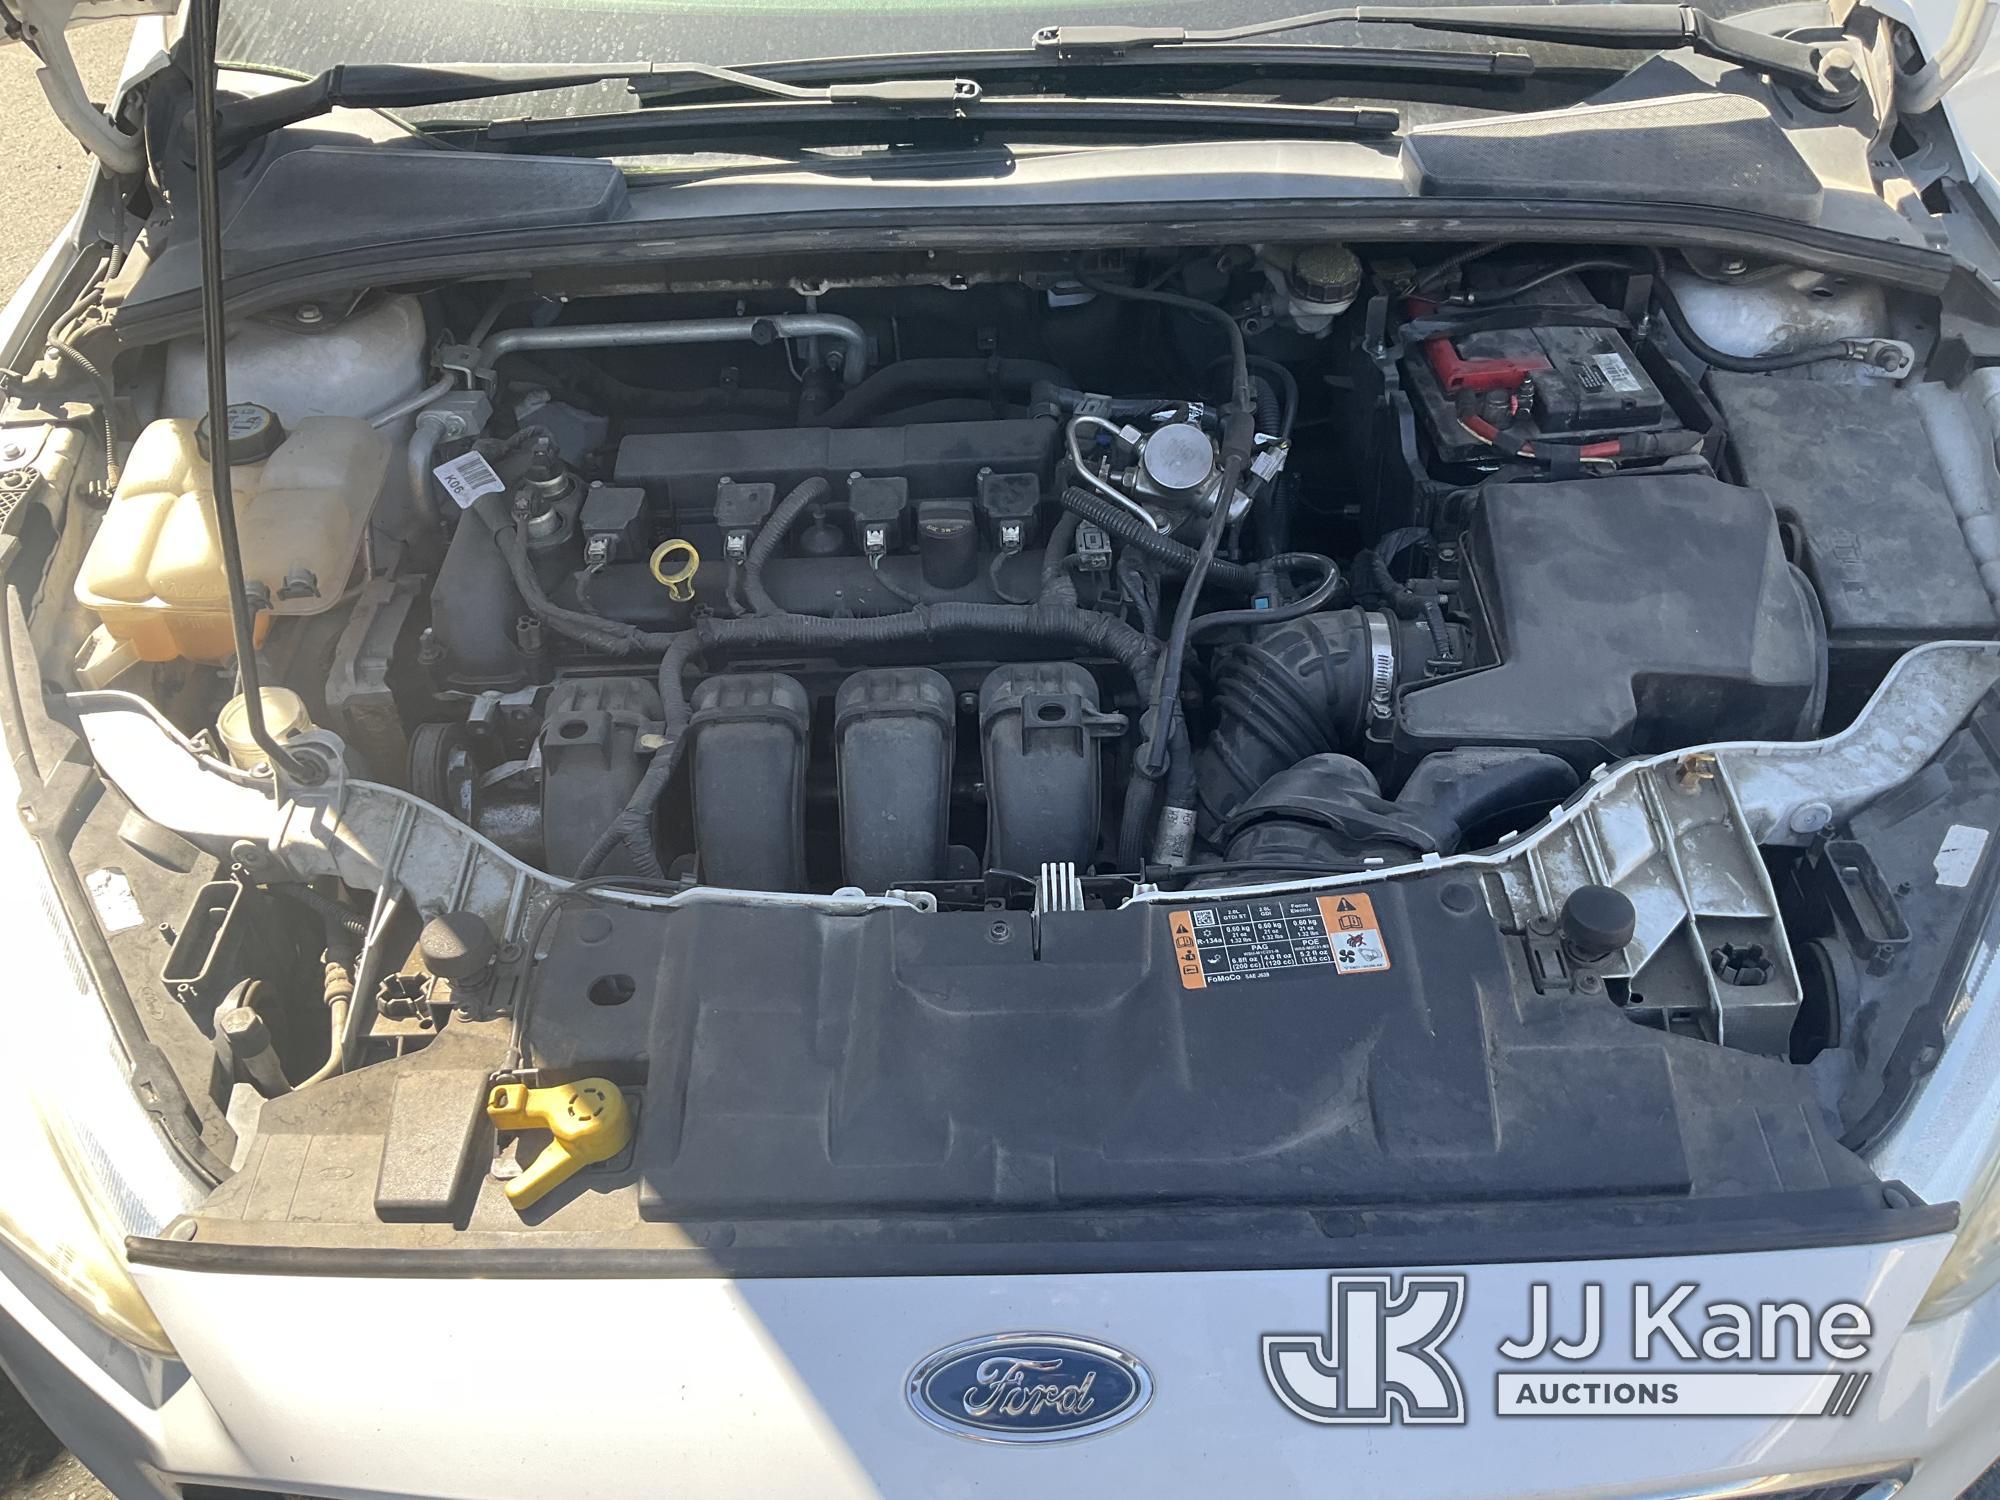 (Jurupa Valley, CA) 2016 Ford Focus 4-Door Sedan Runs & Moves, Check Engine Light On